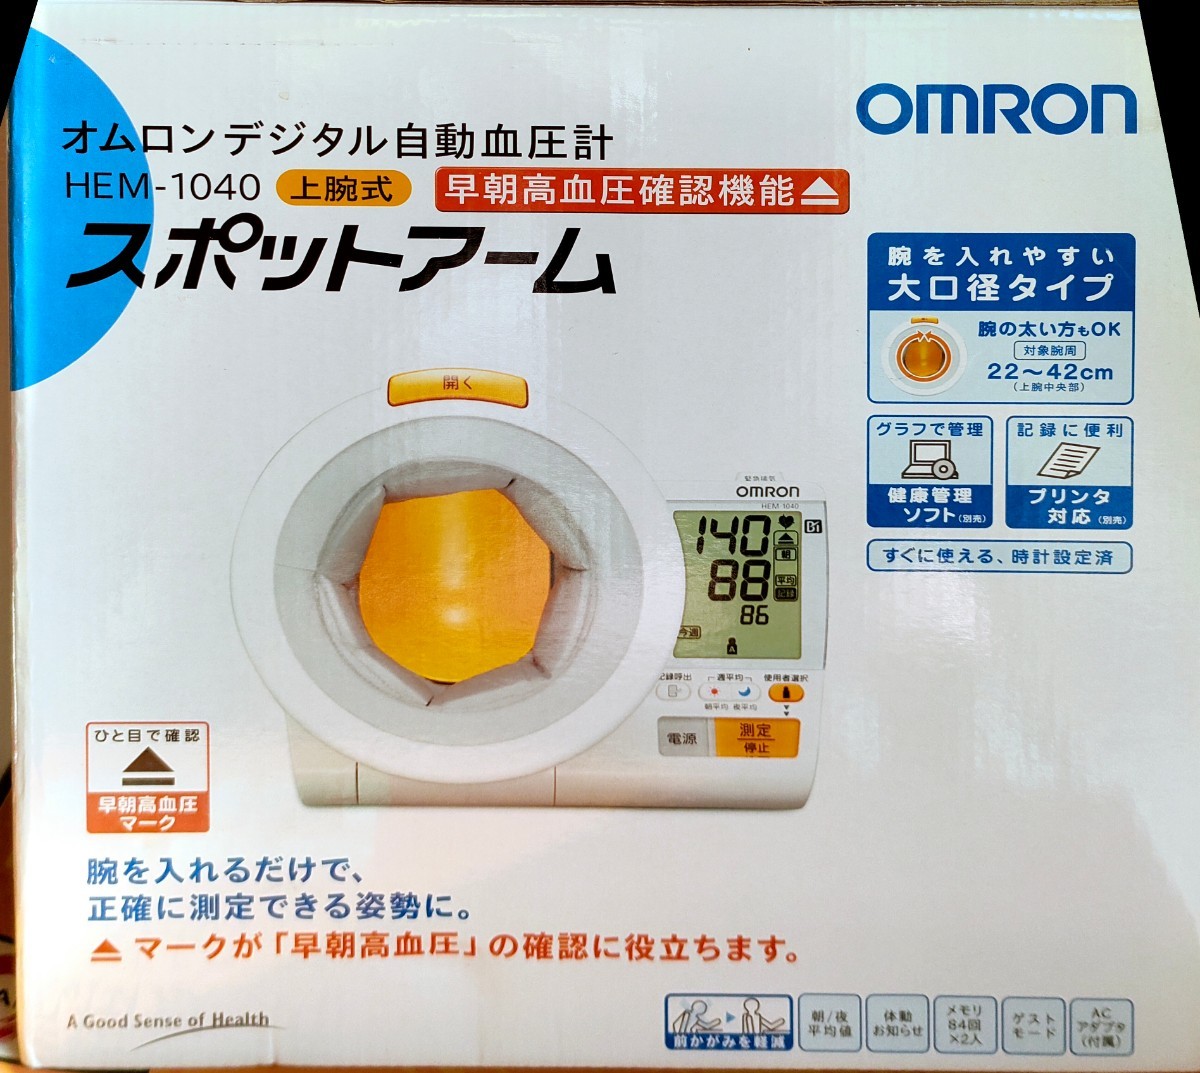 オリジナル オムロンデジタル自動血圧計 自動血圧計 上腕 HEM-1040 OMRON - 血圧計 - reachahand.org